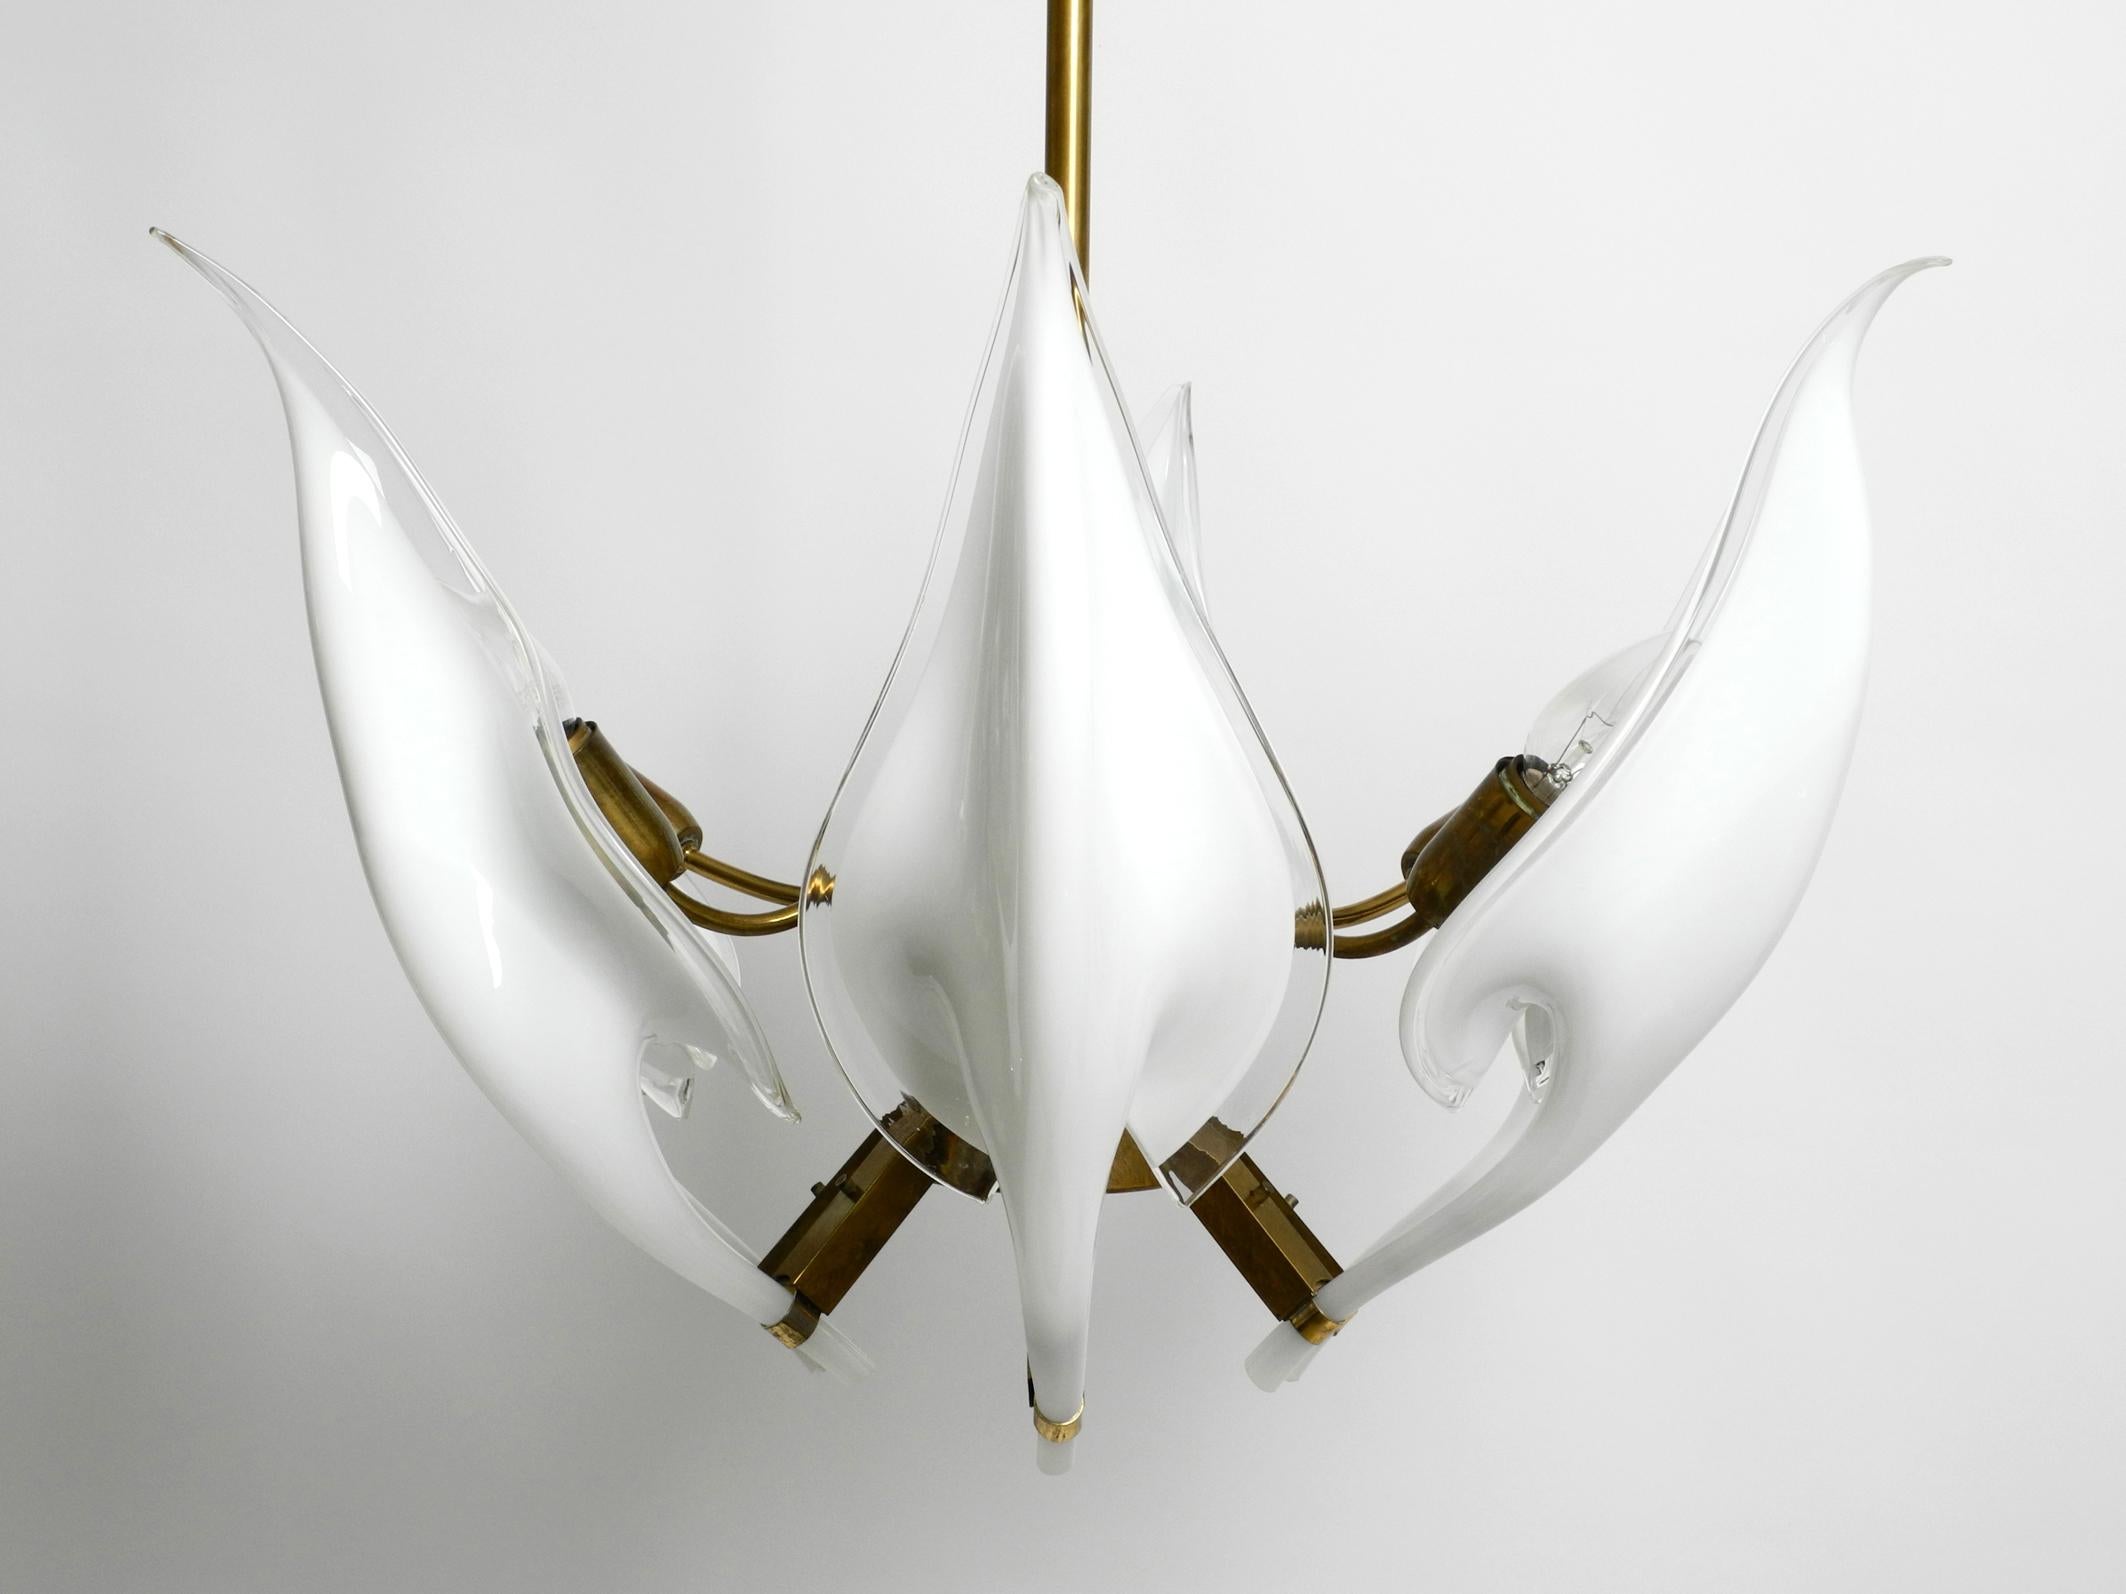 Schöner großer Messingkronleuchter aus den 1950er Jahren mit weißen bis transparenten Murano-Gläsern.
Entworfen von Franco Luce. Hergestellt in Italien.
Sechs lange, durchsichtige, weiße Gläser, die die Form eines Blütenblattes haben.
Jedes Glas